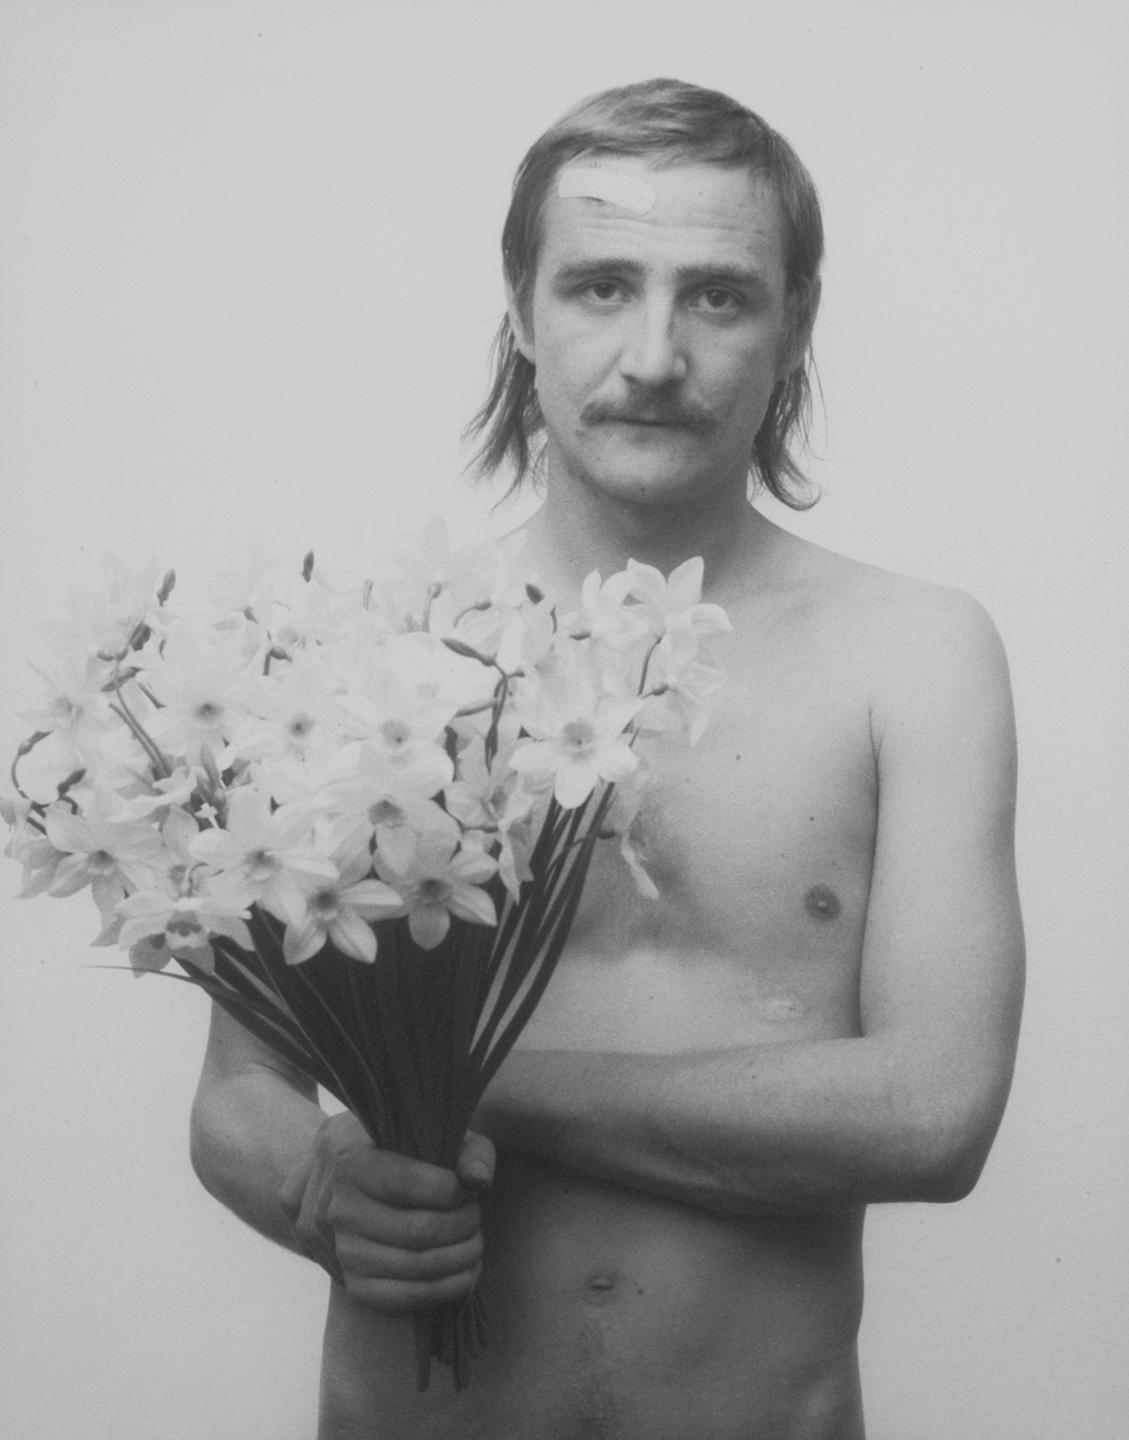 Das Schwarzweißfoto von Rudolf Bonvie zeigt einen Mann mit nacktem Oberkörper, der einen Strauß Narzissen in den Händen hält.